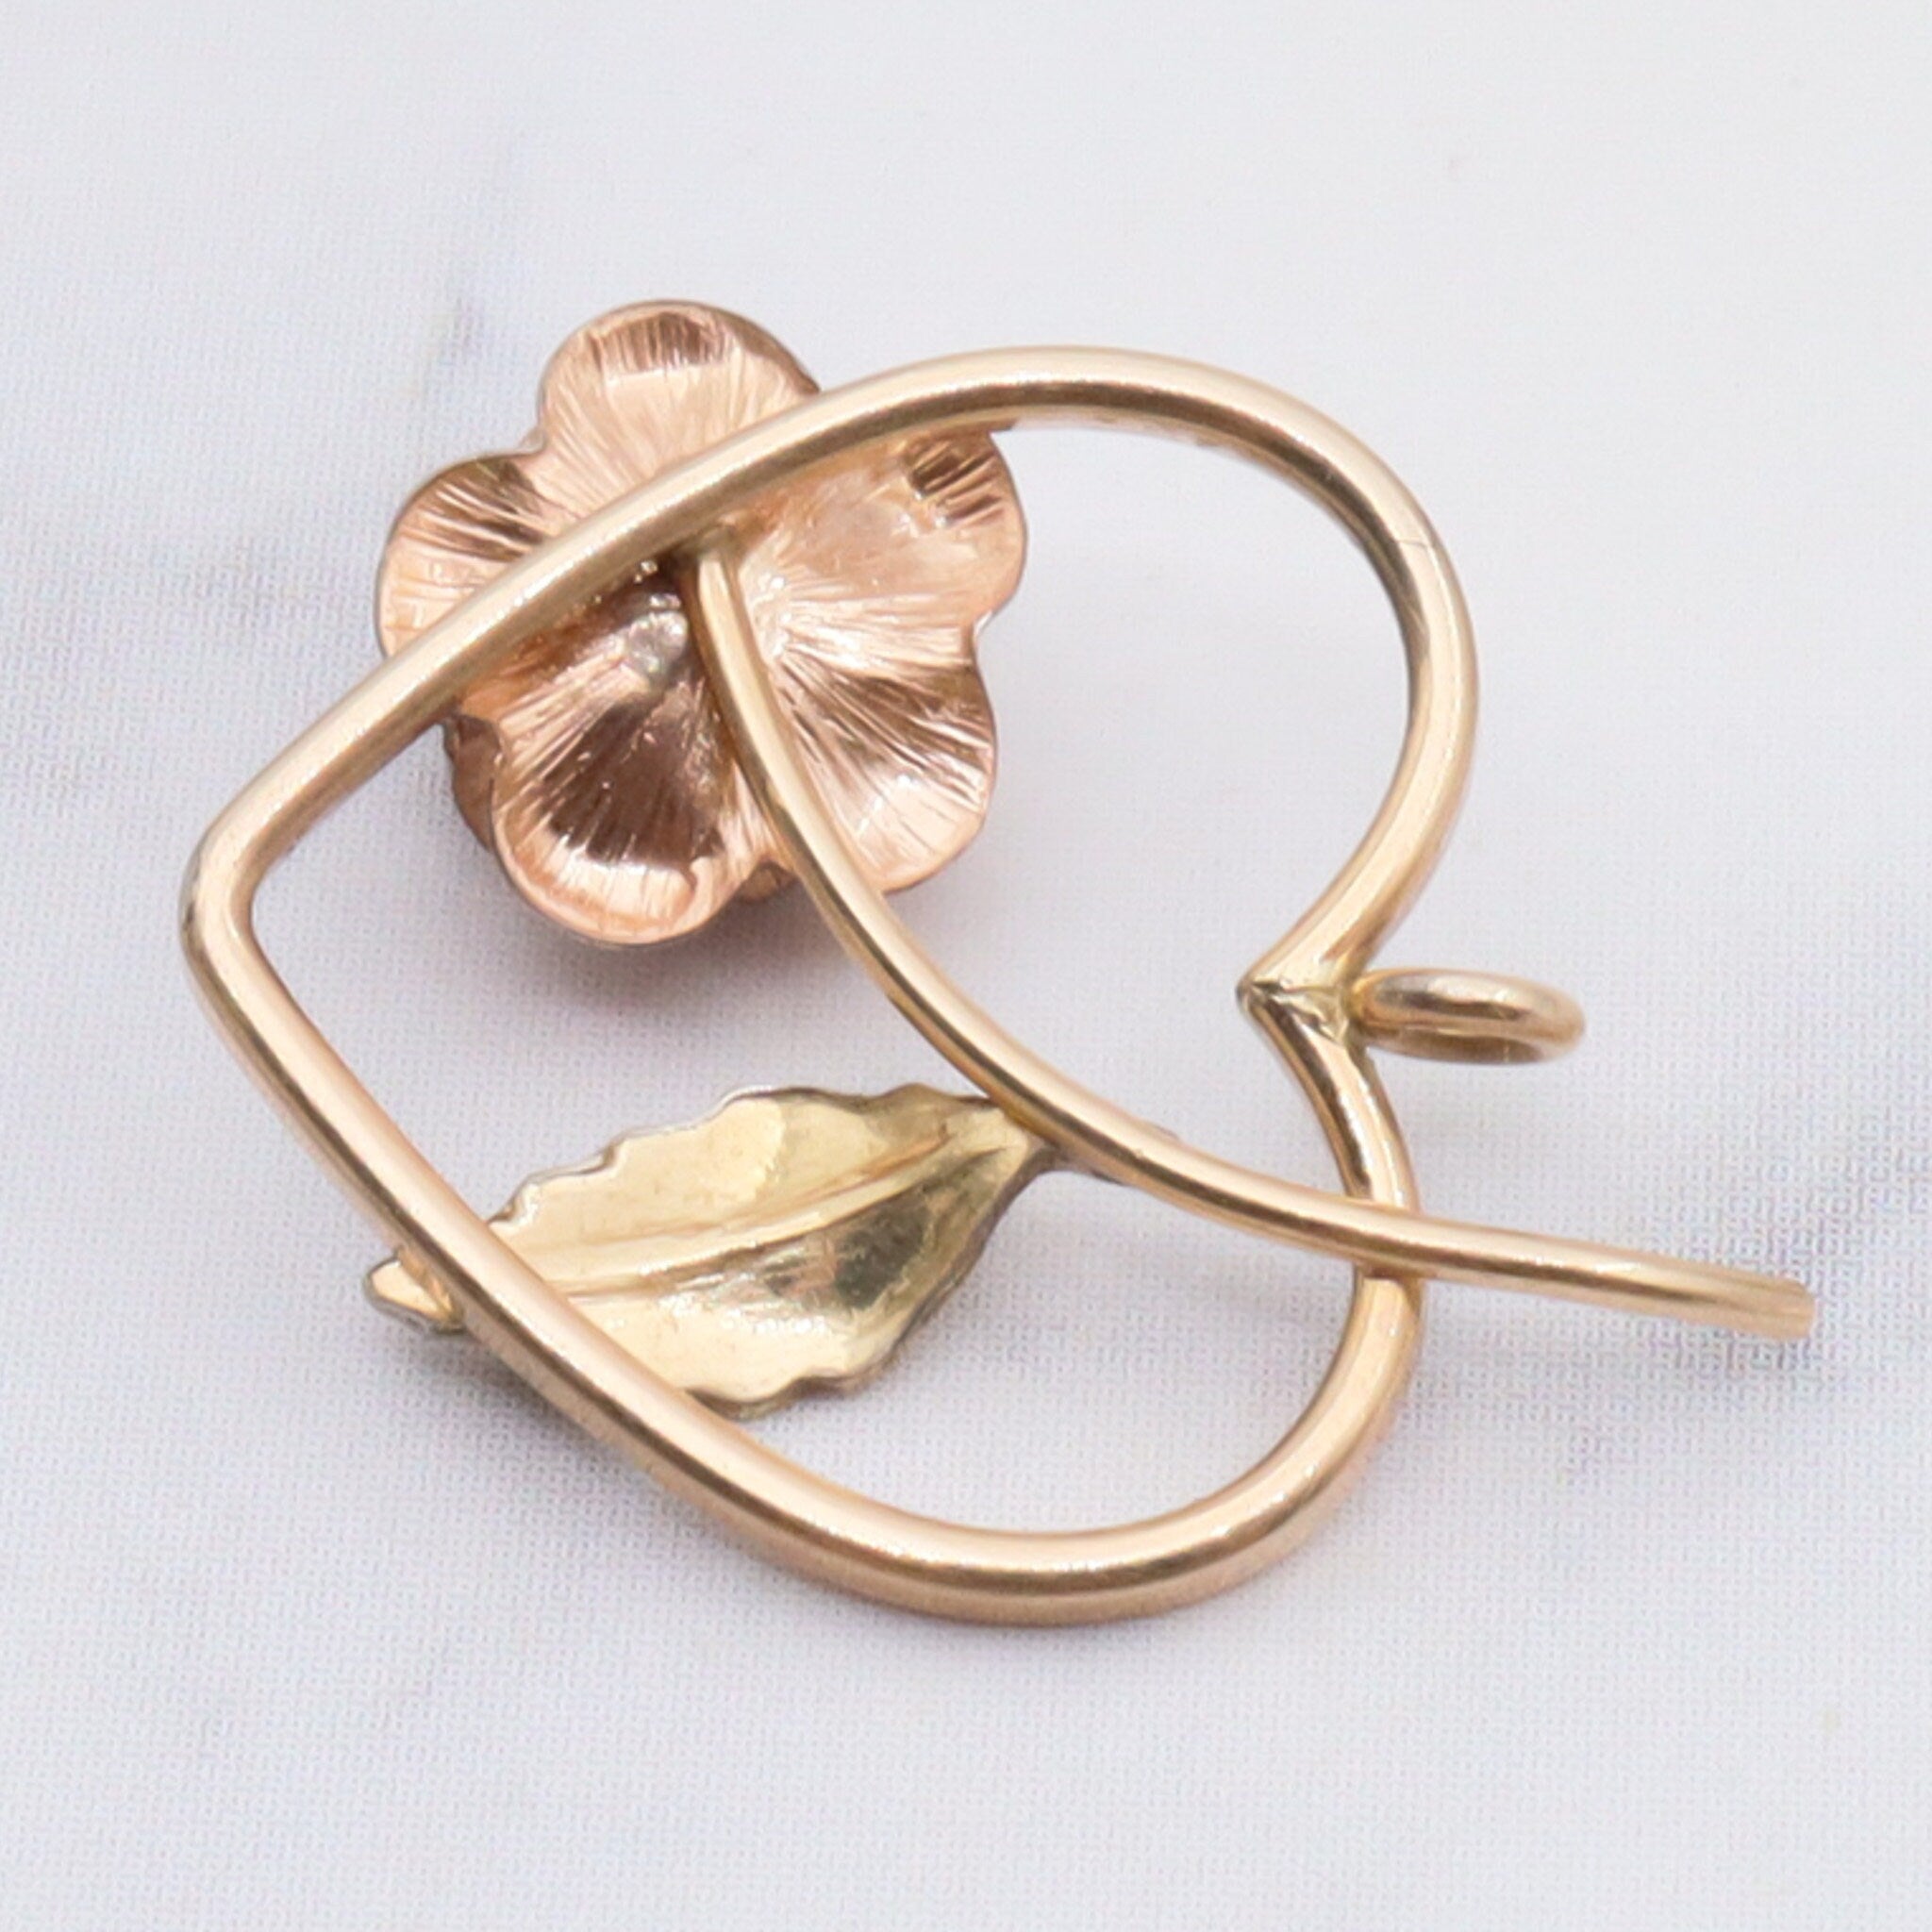 Vintage 14k gold petite heart floral pendant